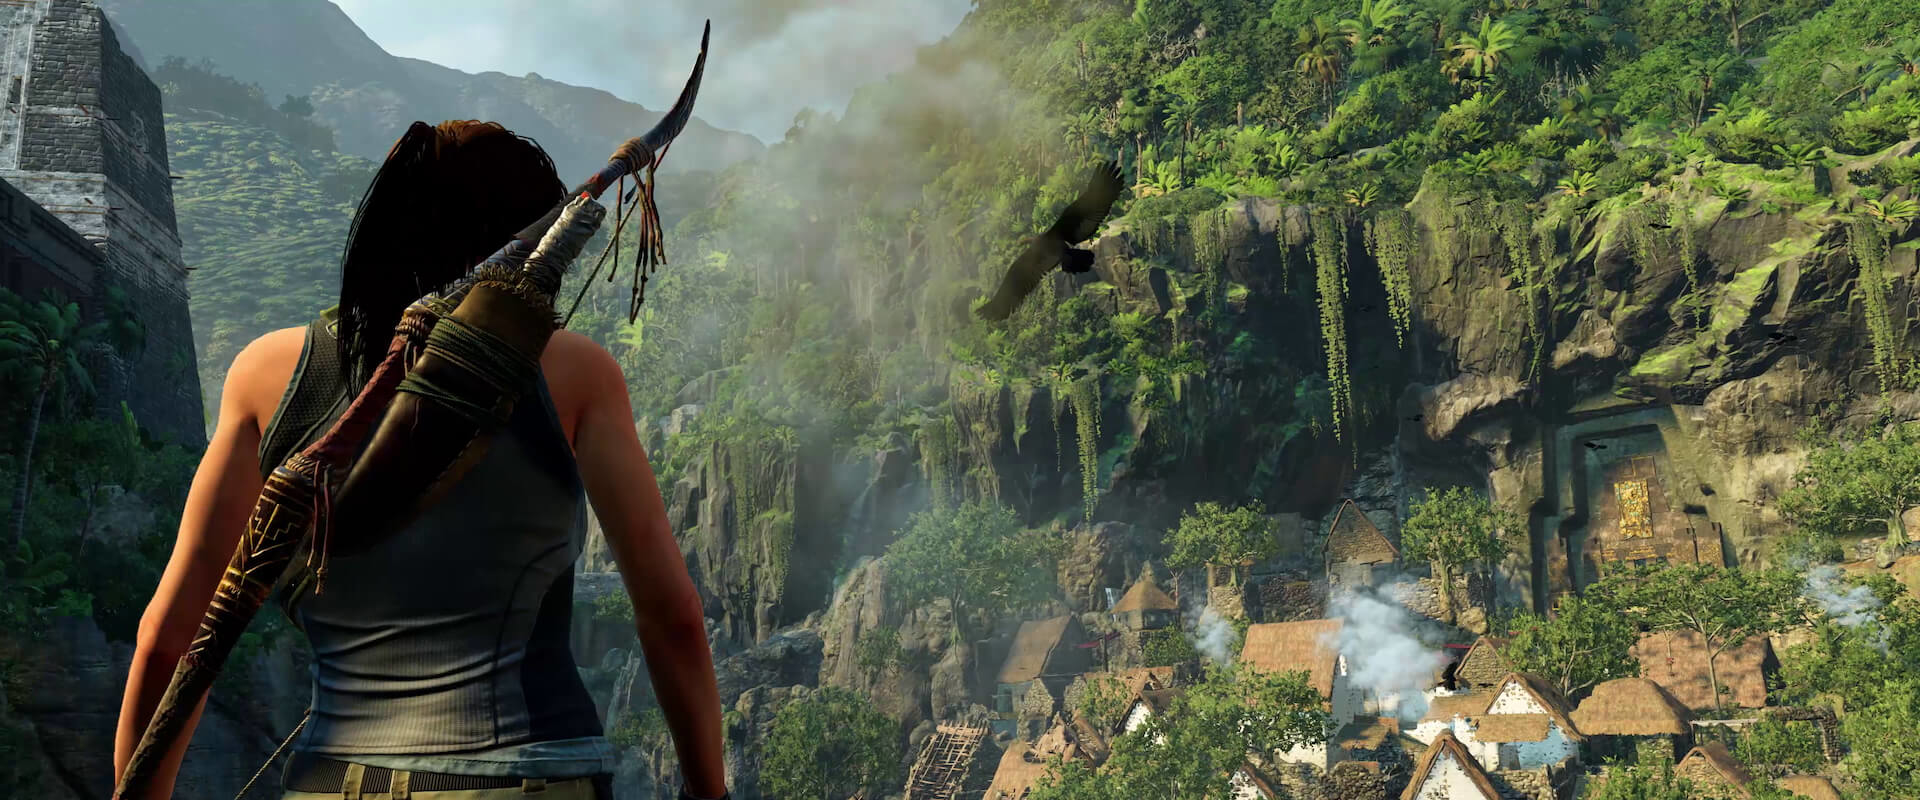 Lara Croft izgalmas videócsokorral érkezik